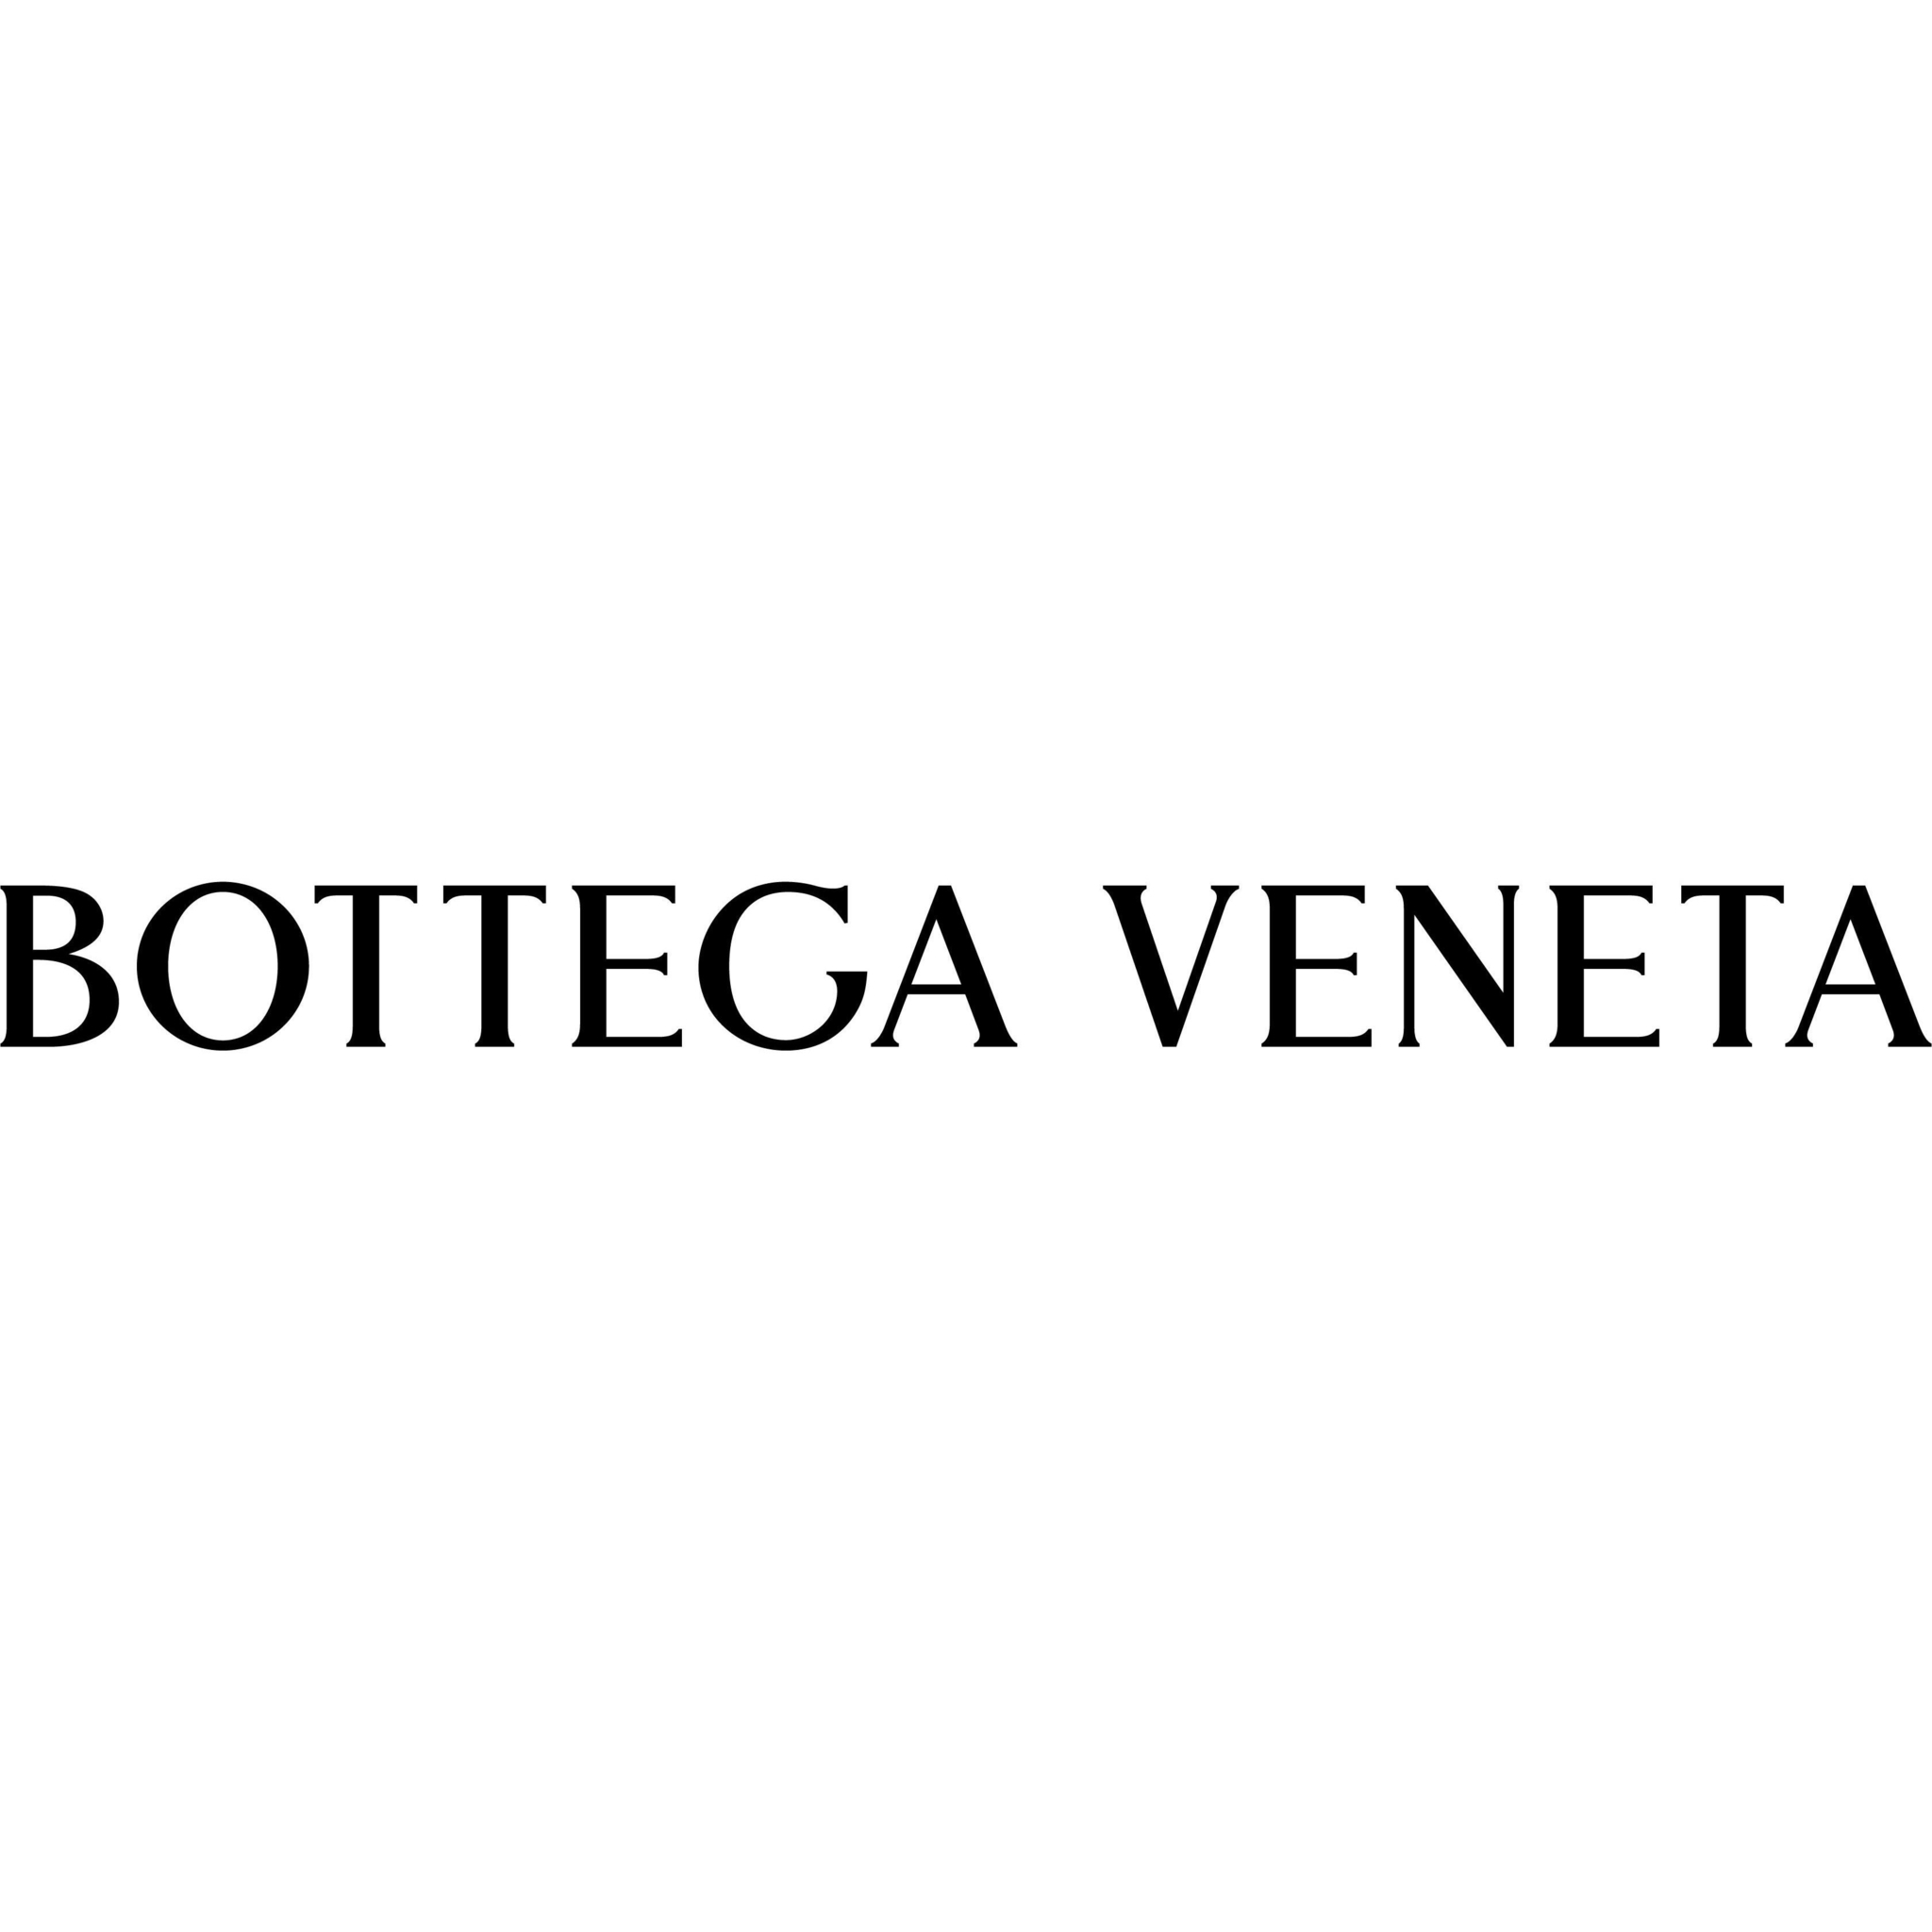 Bottega Veneta Toronto Bloor Holt Renfrew - Magasins d'articles en cuir